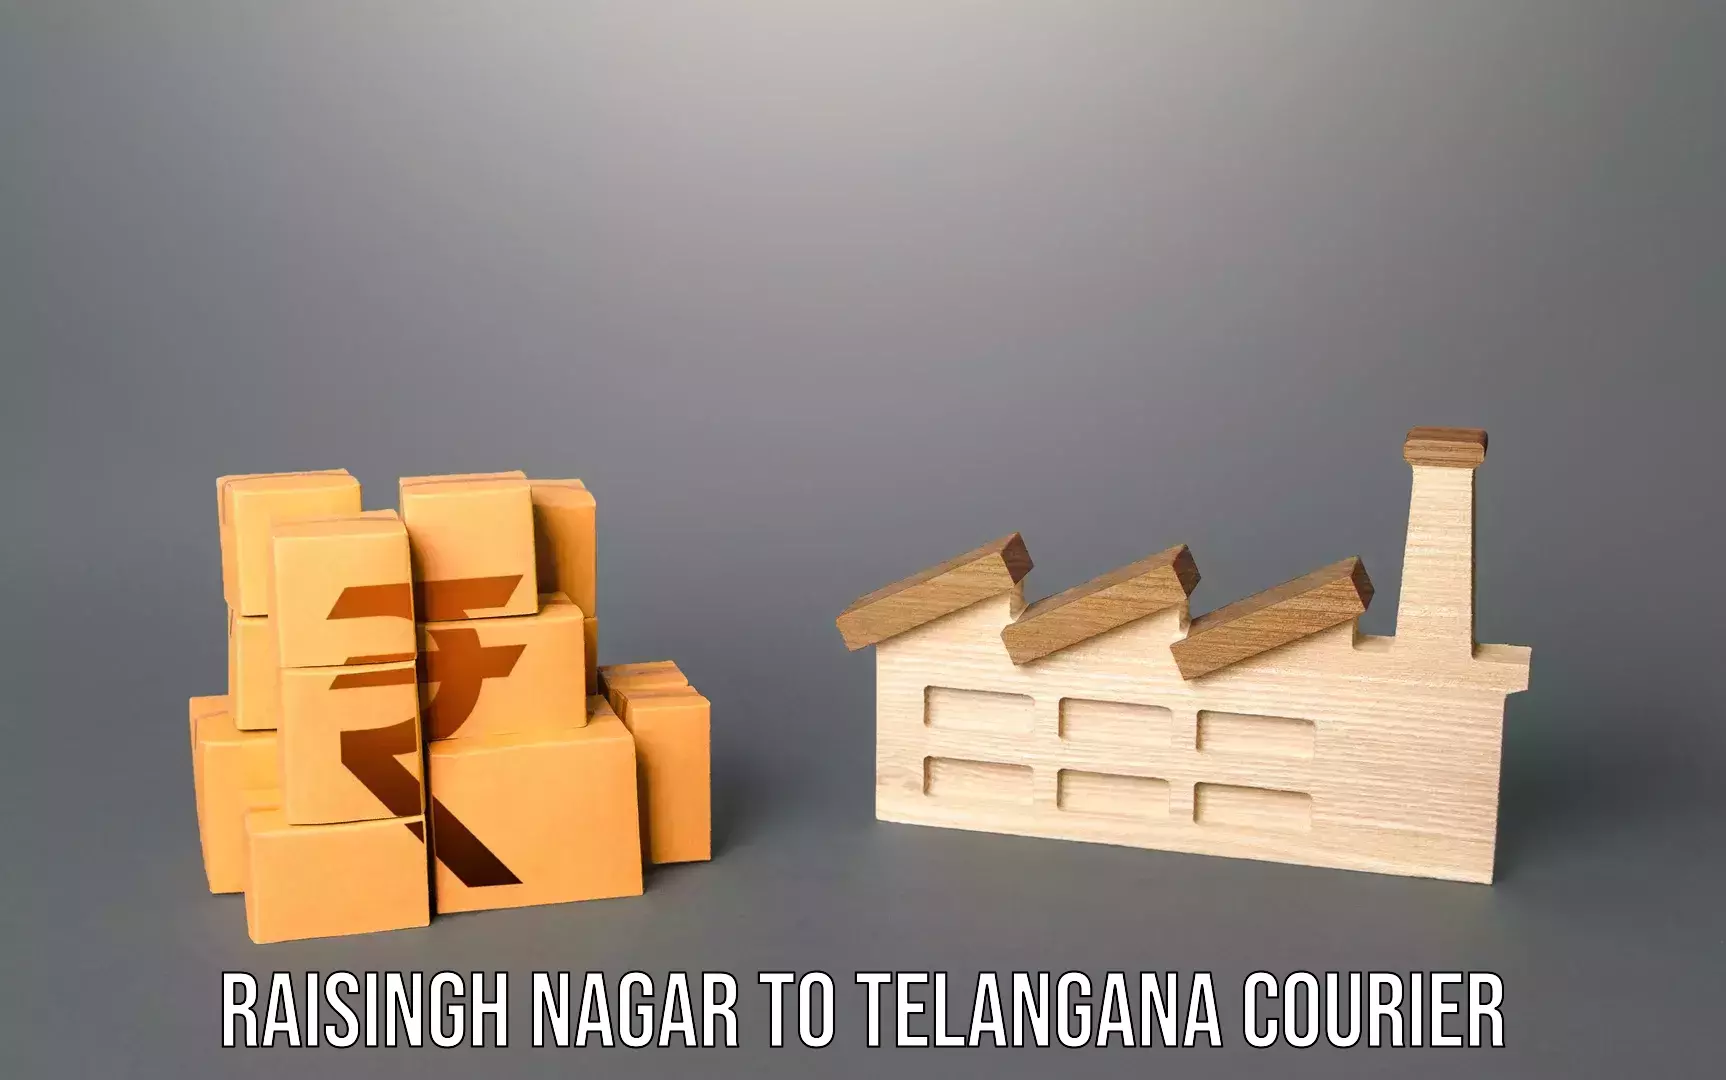 Baggage courier optimization Raisingh Nagar to Allapalli